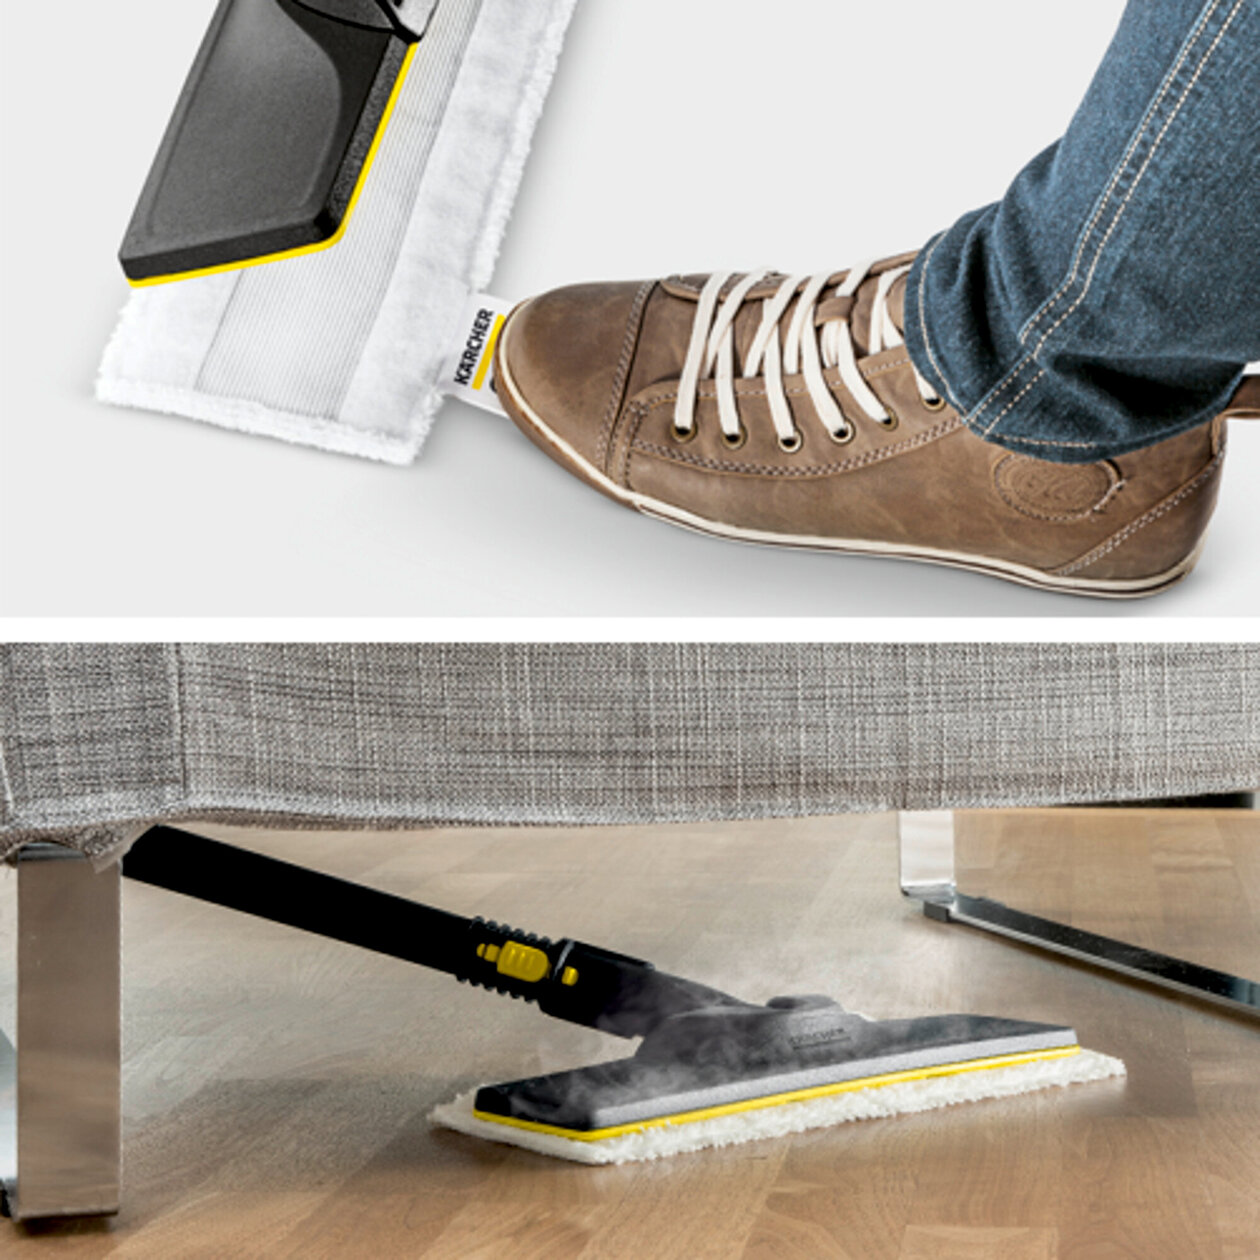  SC 3 EasyFix SK Set: Súprava na čistenie podlahy EasyFix s flexibilným kĺbom na podlahovej hubici a pohodlným suchým zipsom na upevnenie utierky na podlahu